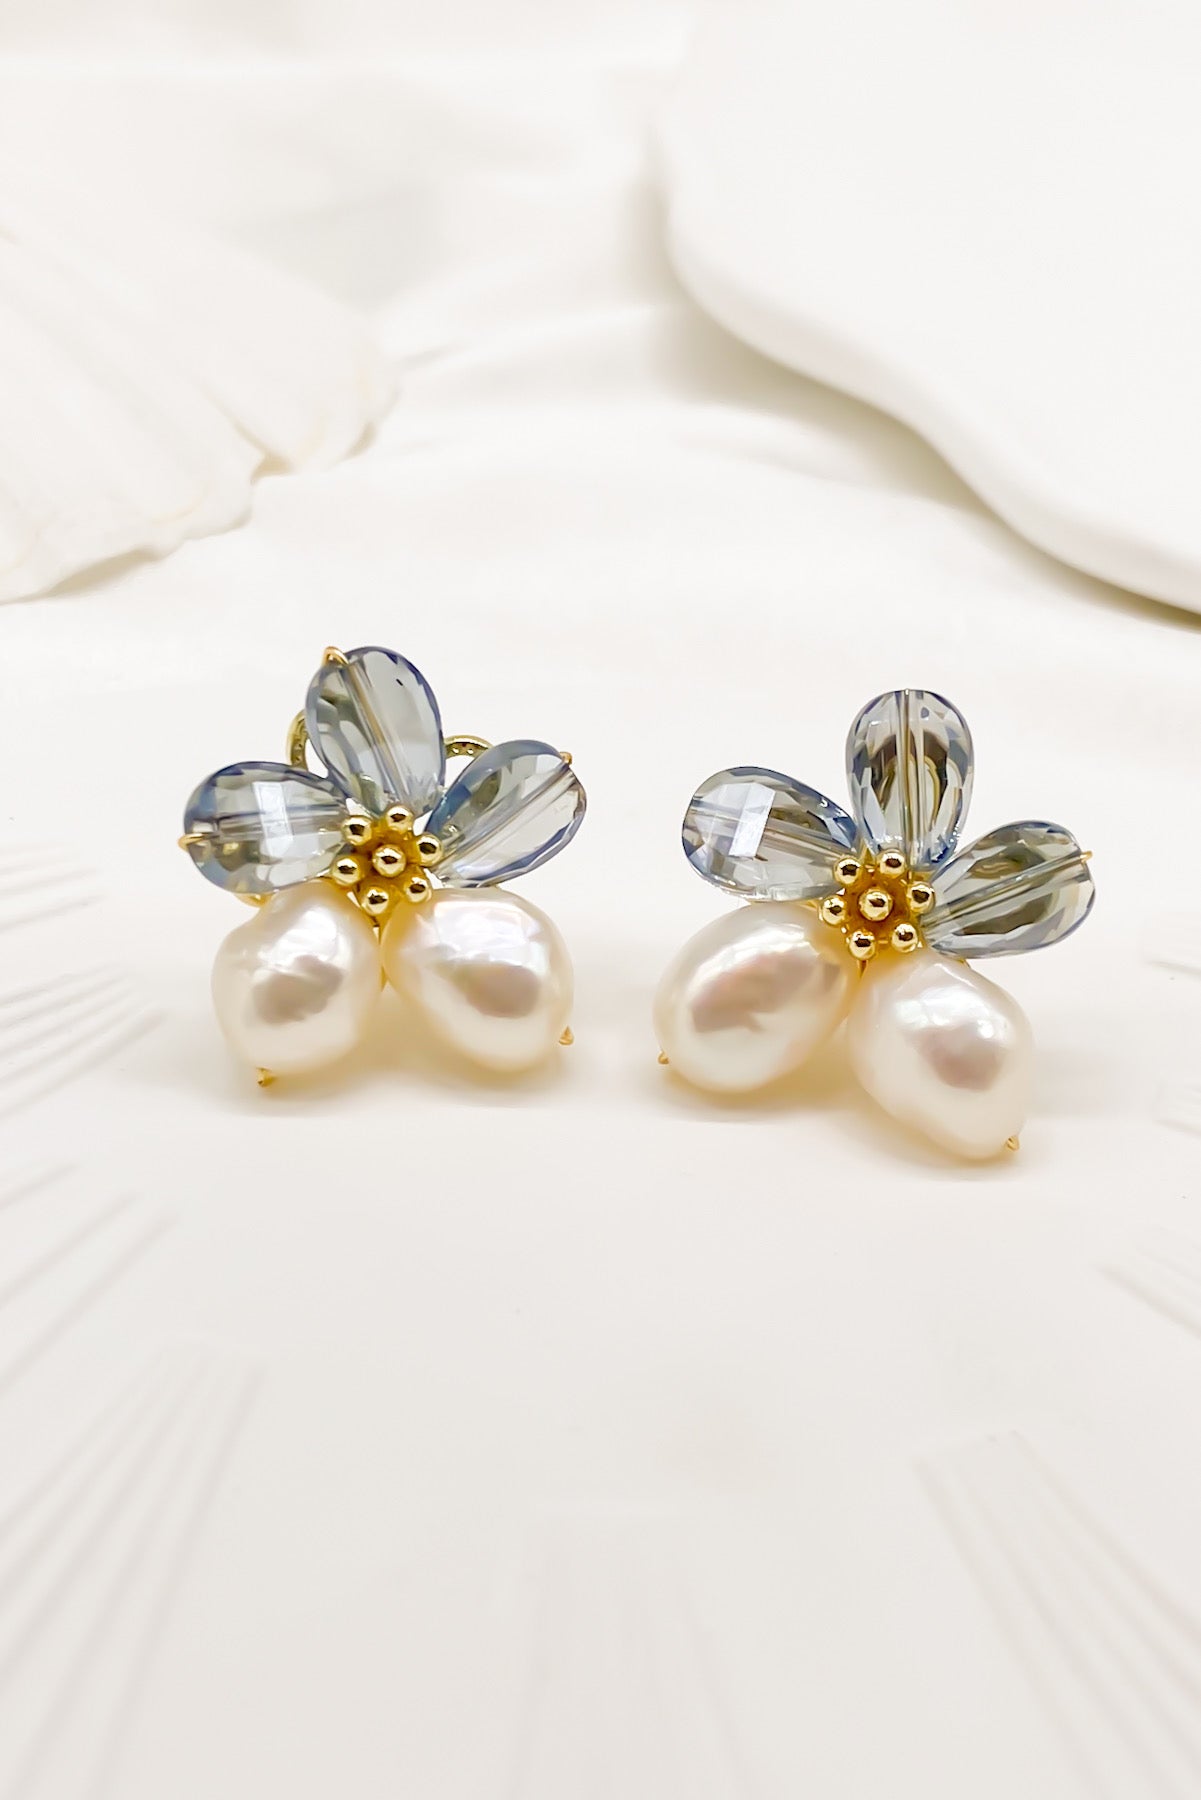 SKYE Shop Chic Modern Elegant Classy Women Jewelry French Parisian Minimalist Kira Cystal Flower Freshwater Pearl Earrings 9